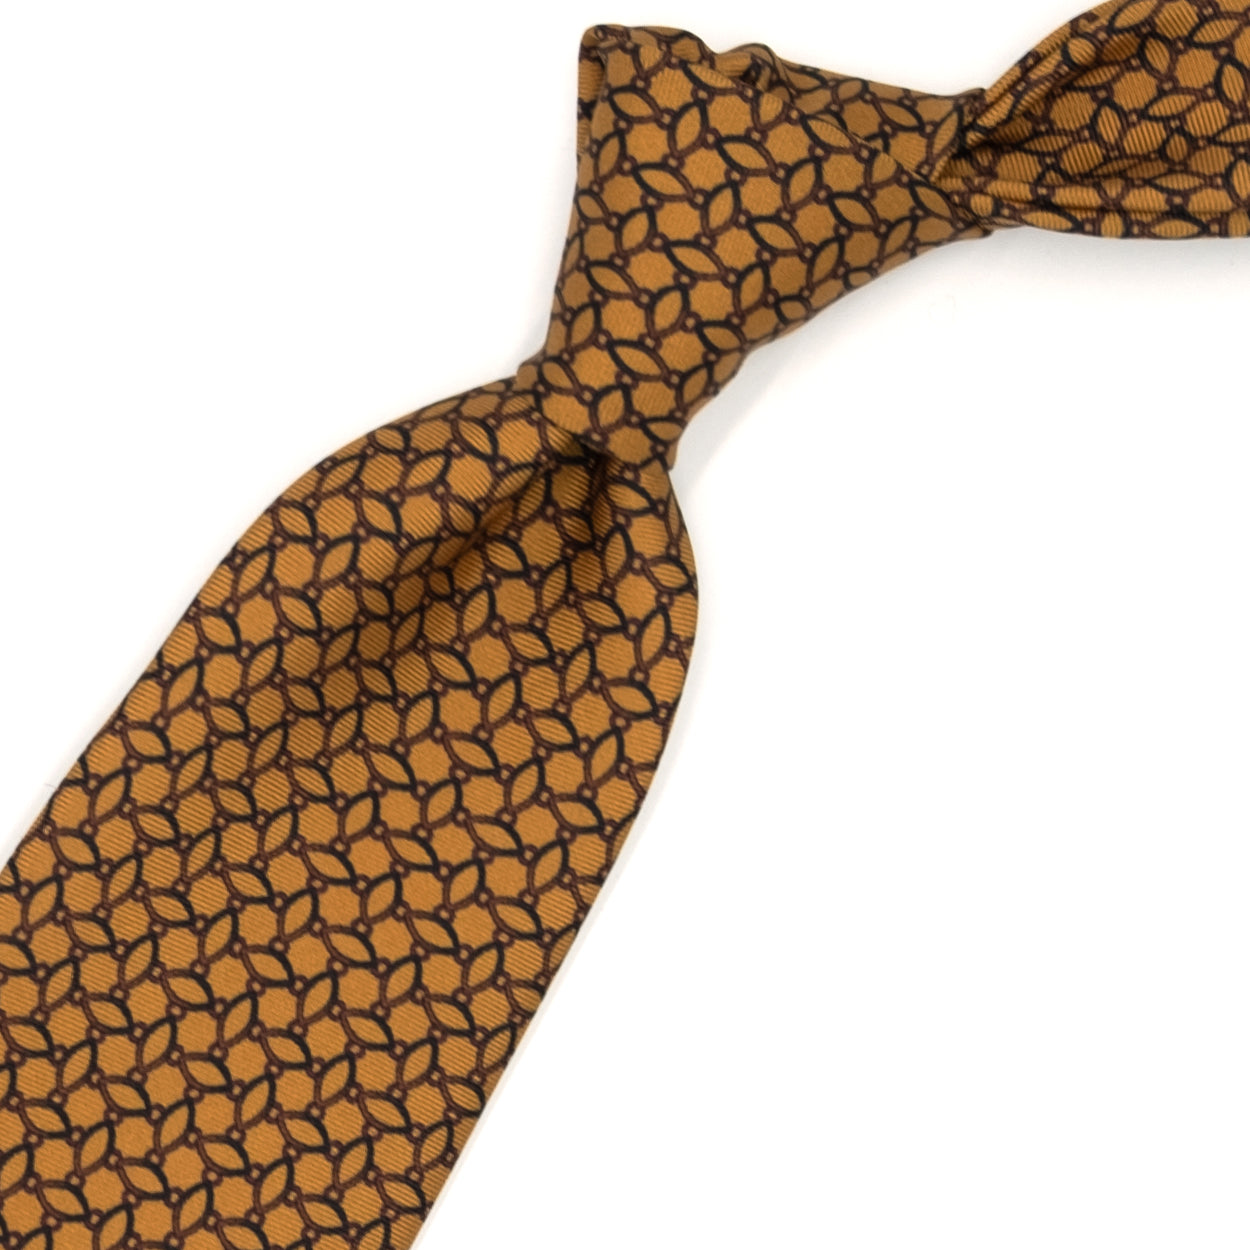 Cravatta senape con pattern astratto marrone